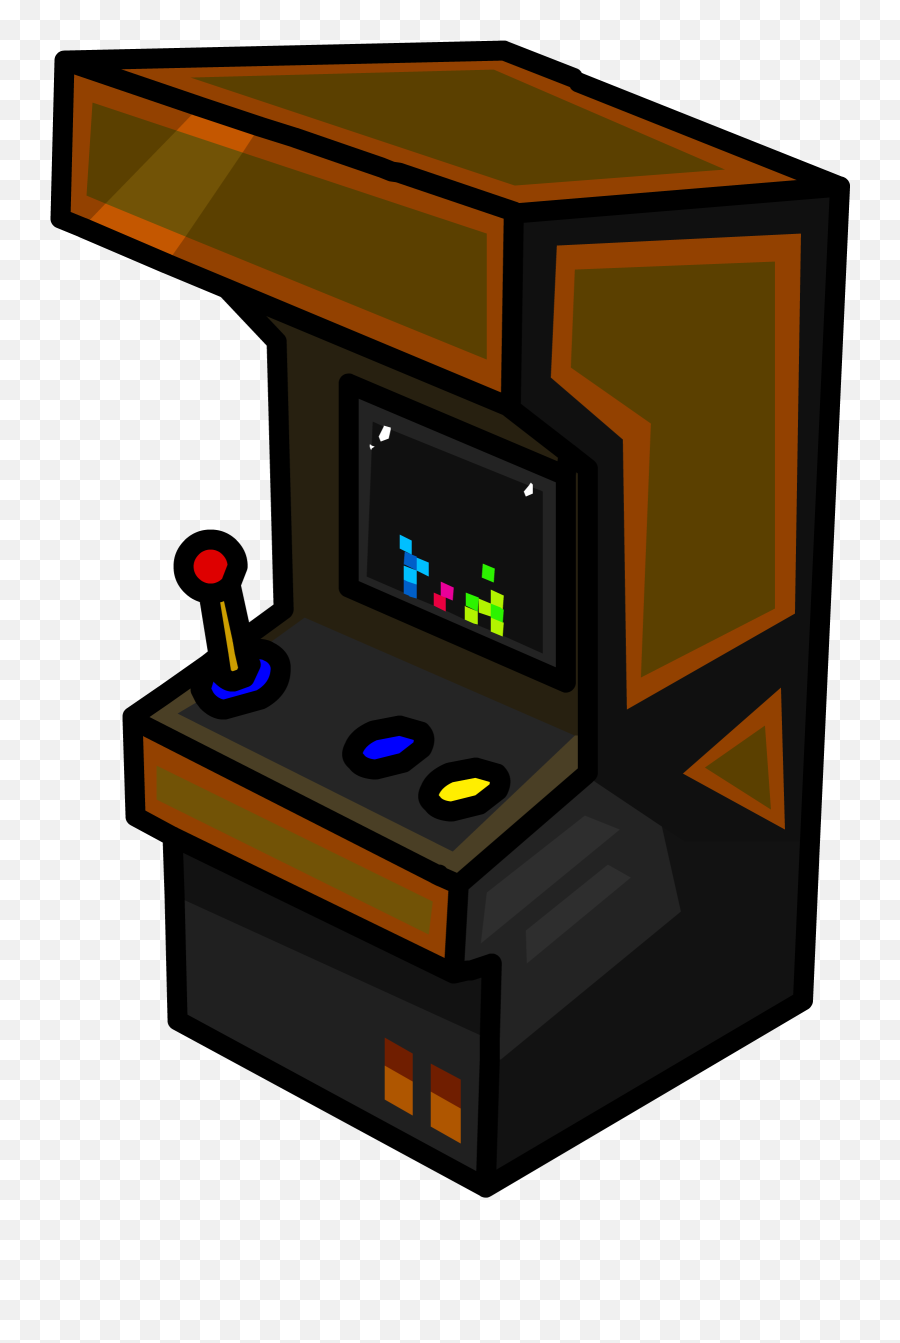 Club Penguin Arcade Game Video Game Amusement Arcade Pong - Arcade Game Png Emoji,Donkey Kong Emojis